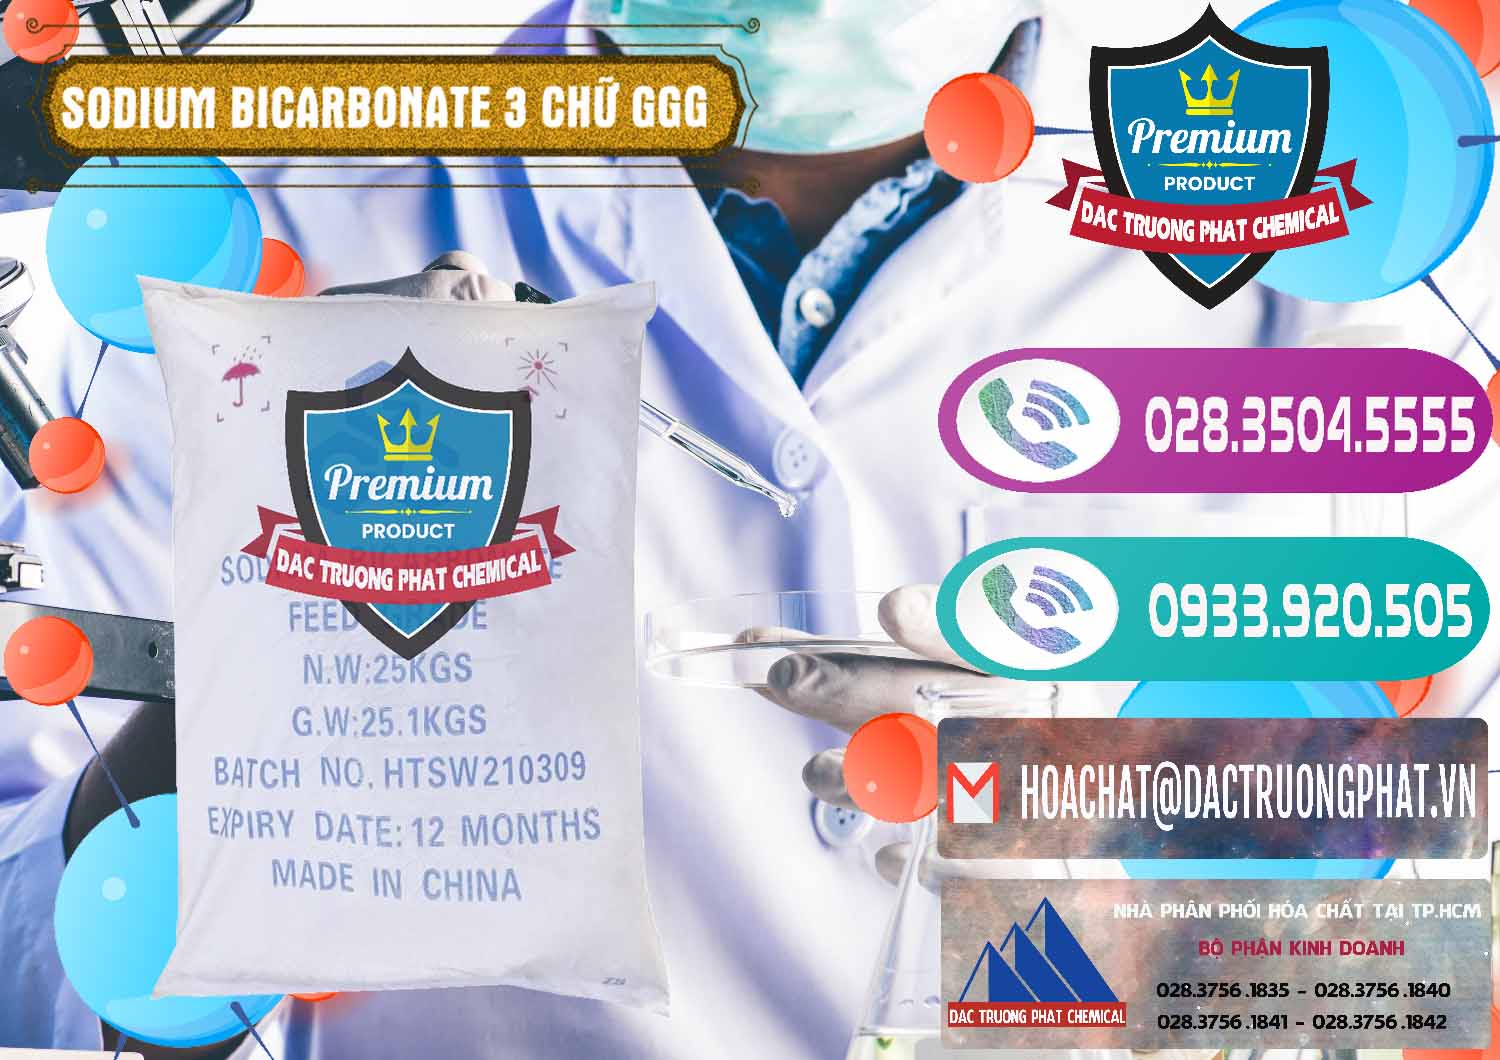 Nơi chuyên cung cấp _ bán Sodium Bicarbonate – Bicar NaHCO3 Food Grade 3 Chữ GGG Trung Quốc China - 0259 - Cty phân phối và cung cấp hóa chất tại TP.HCM - hoachatxulynuoc.com